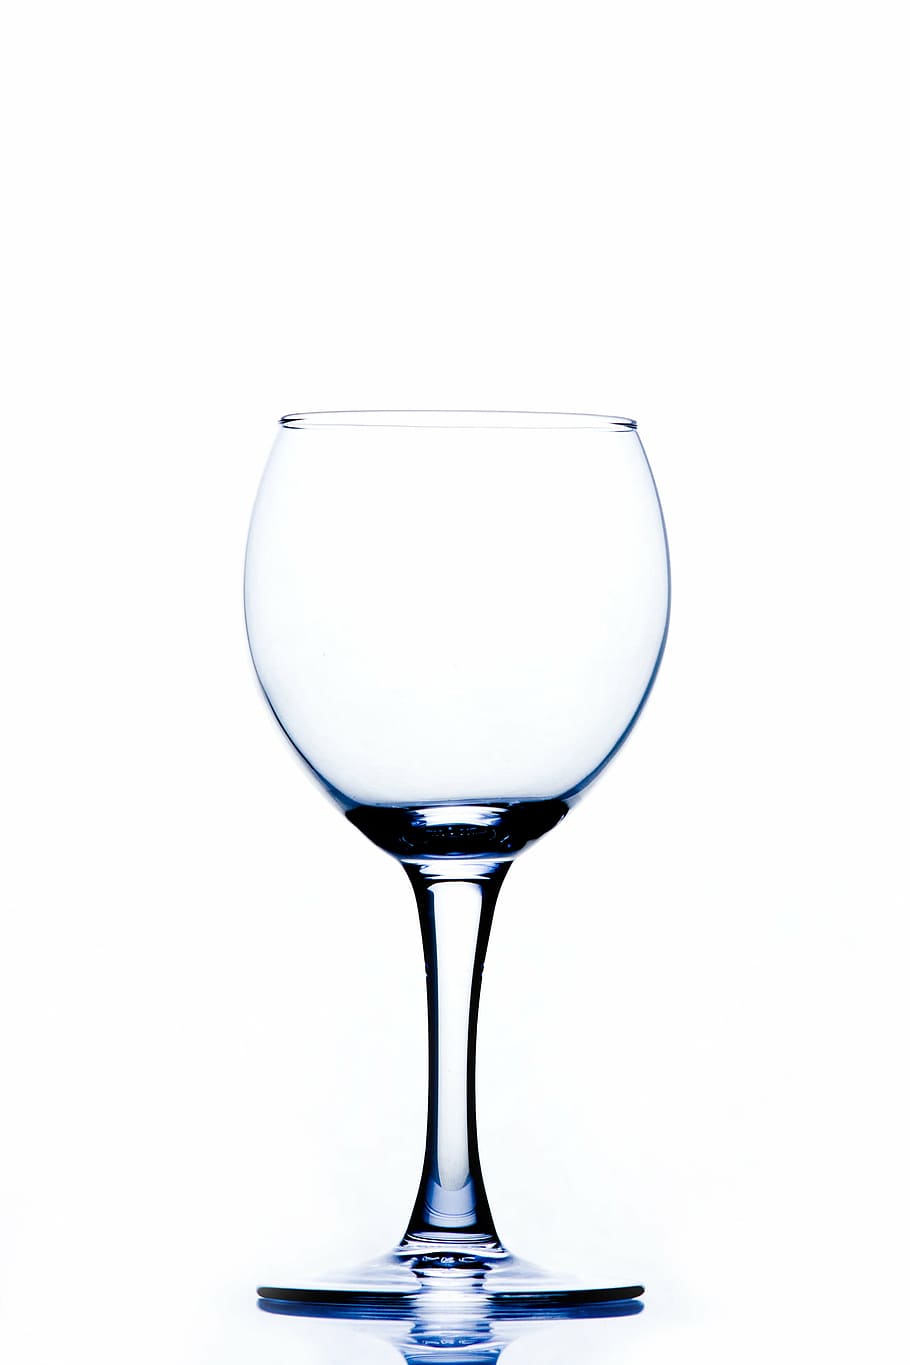 vacío, claro, copa de vino, brillante, vajilla, vidrio, copa de cristal, transparente, copa para beber, reflejo